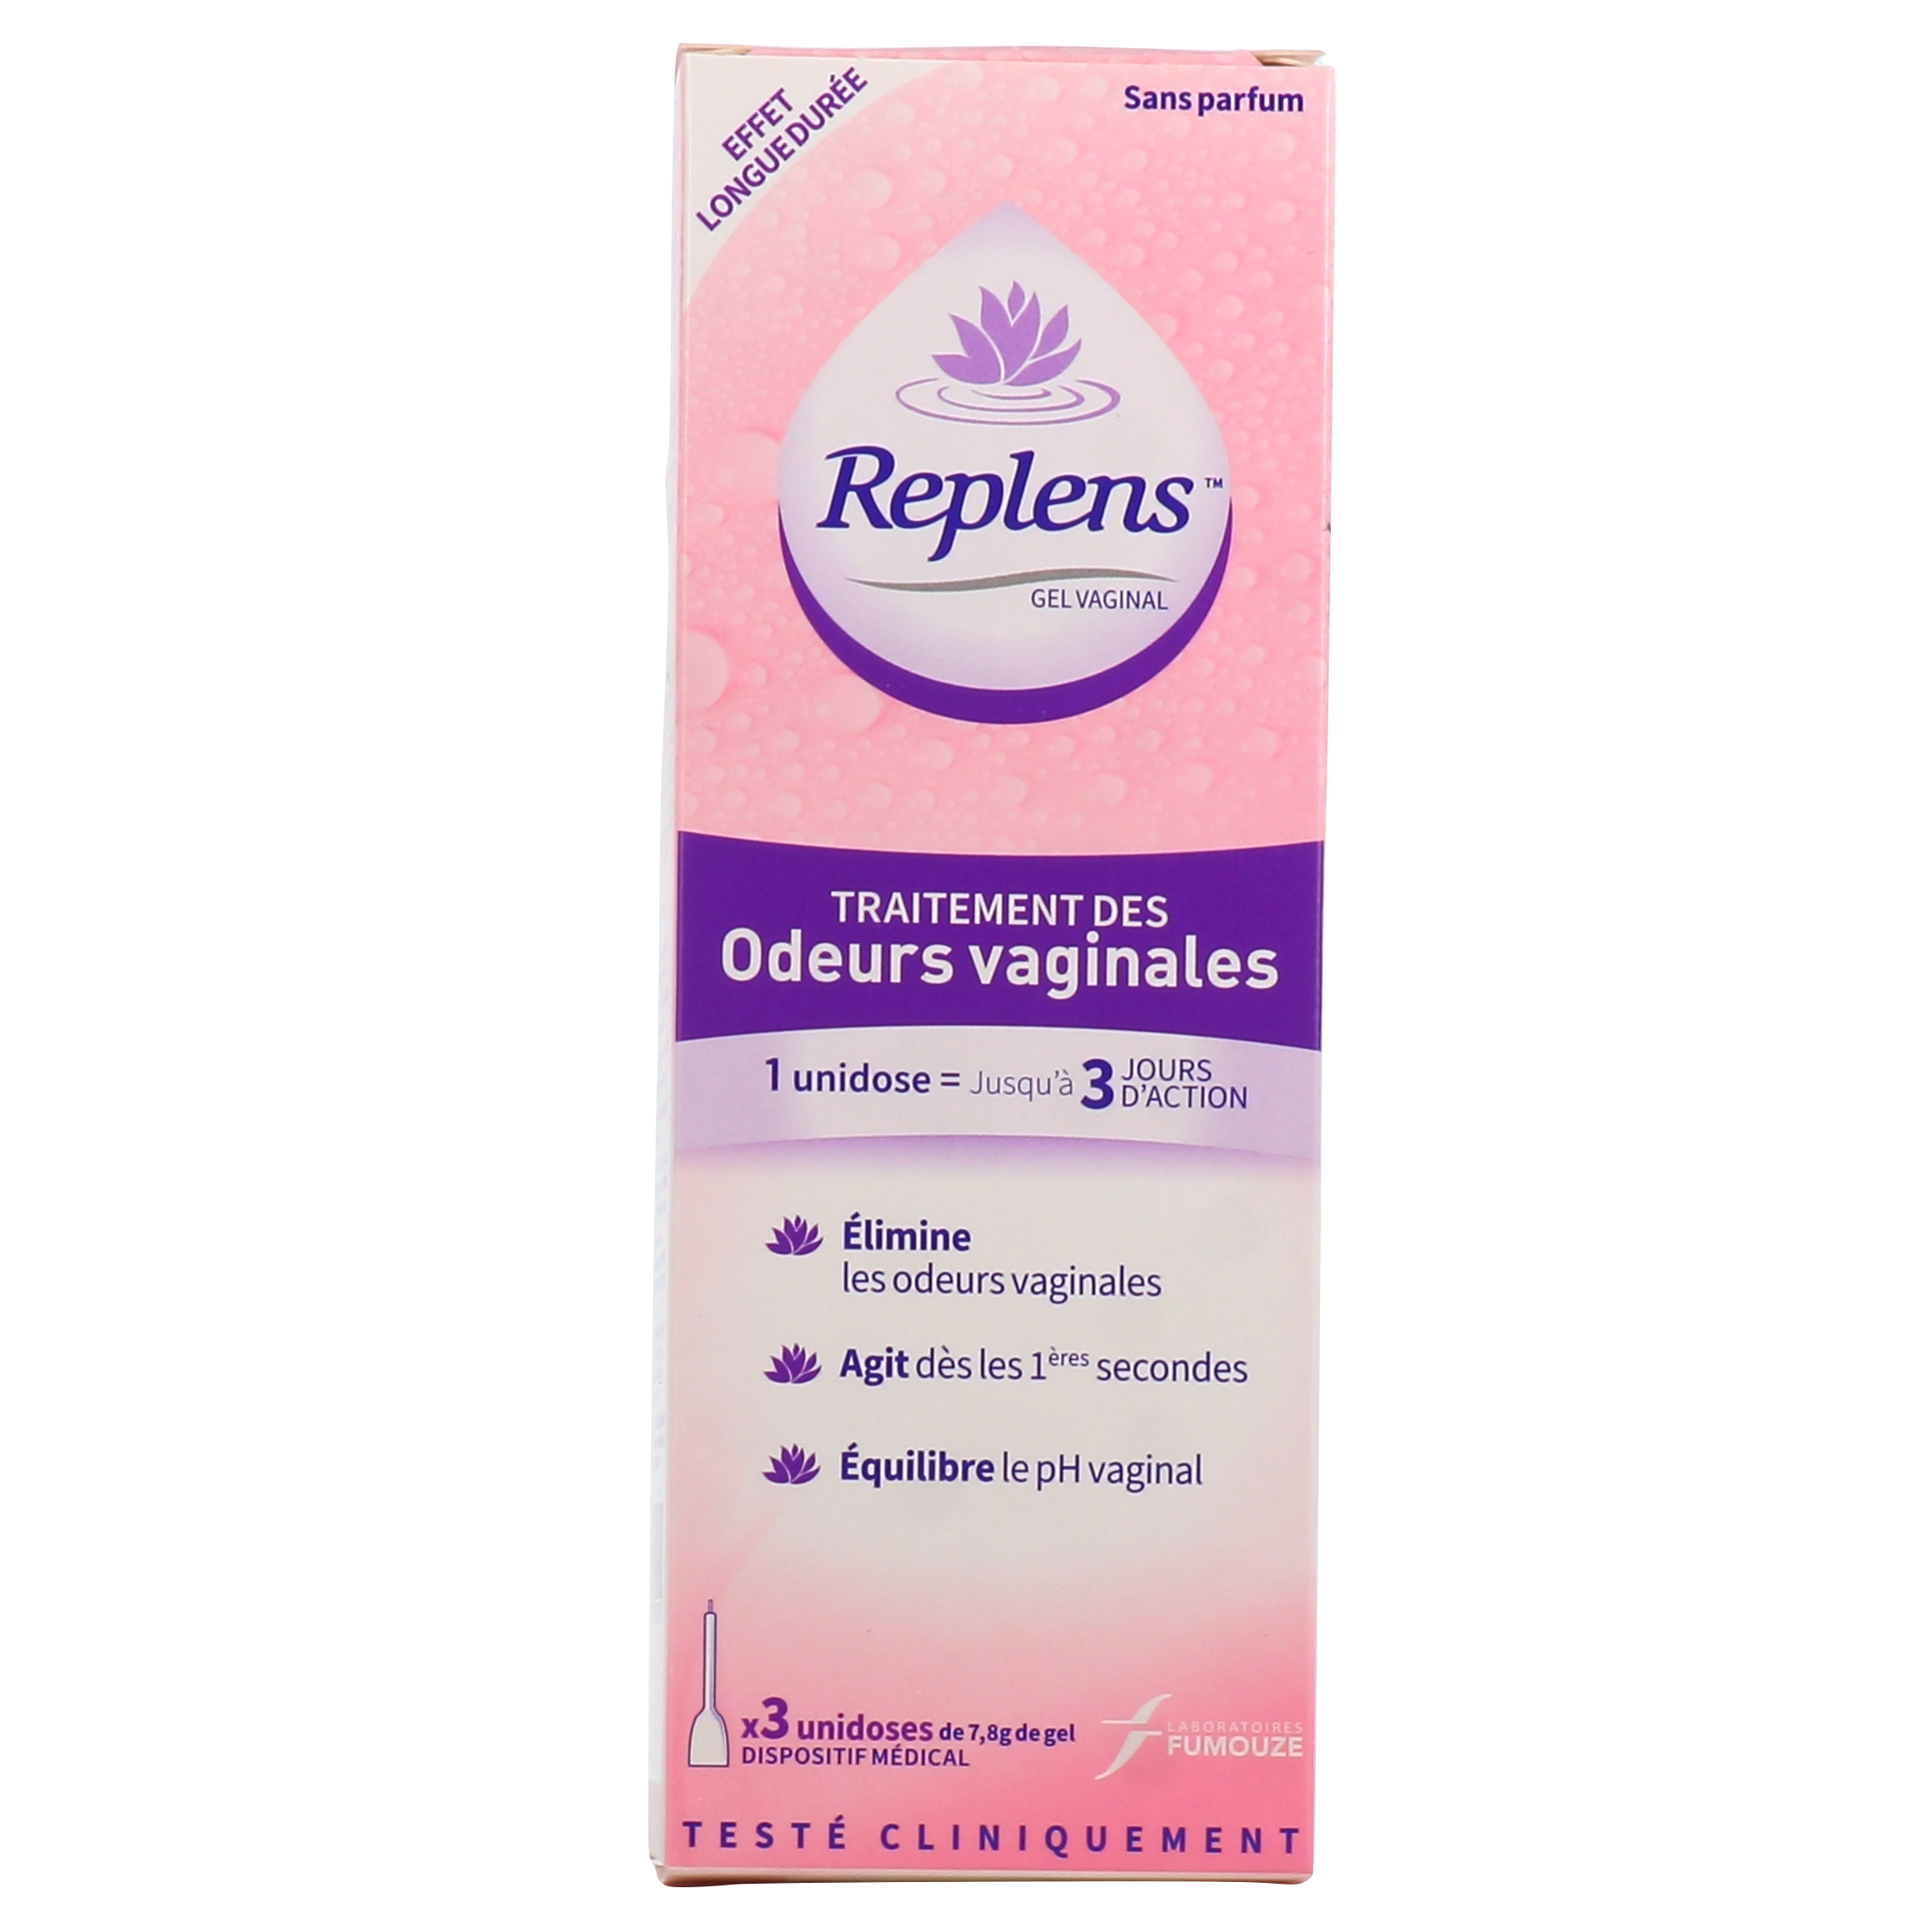 Replens Traitement des odeurs vaginales - 3 unidoses